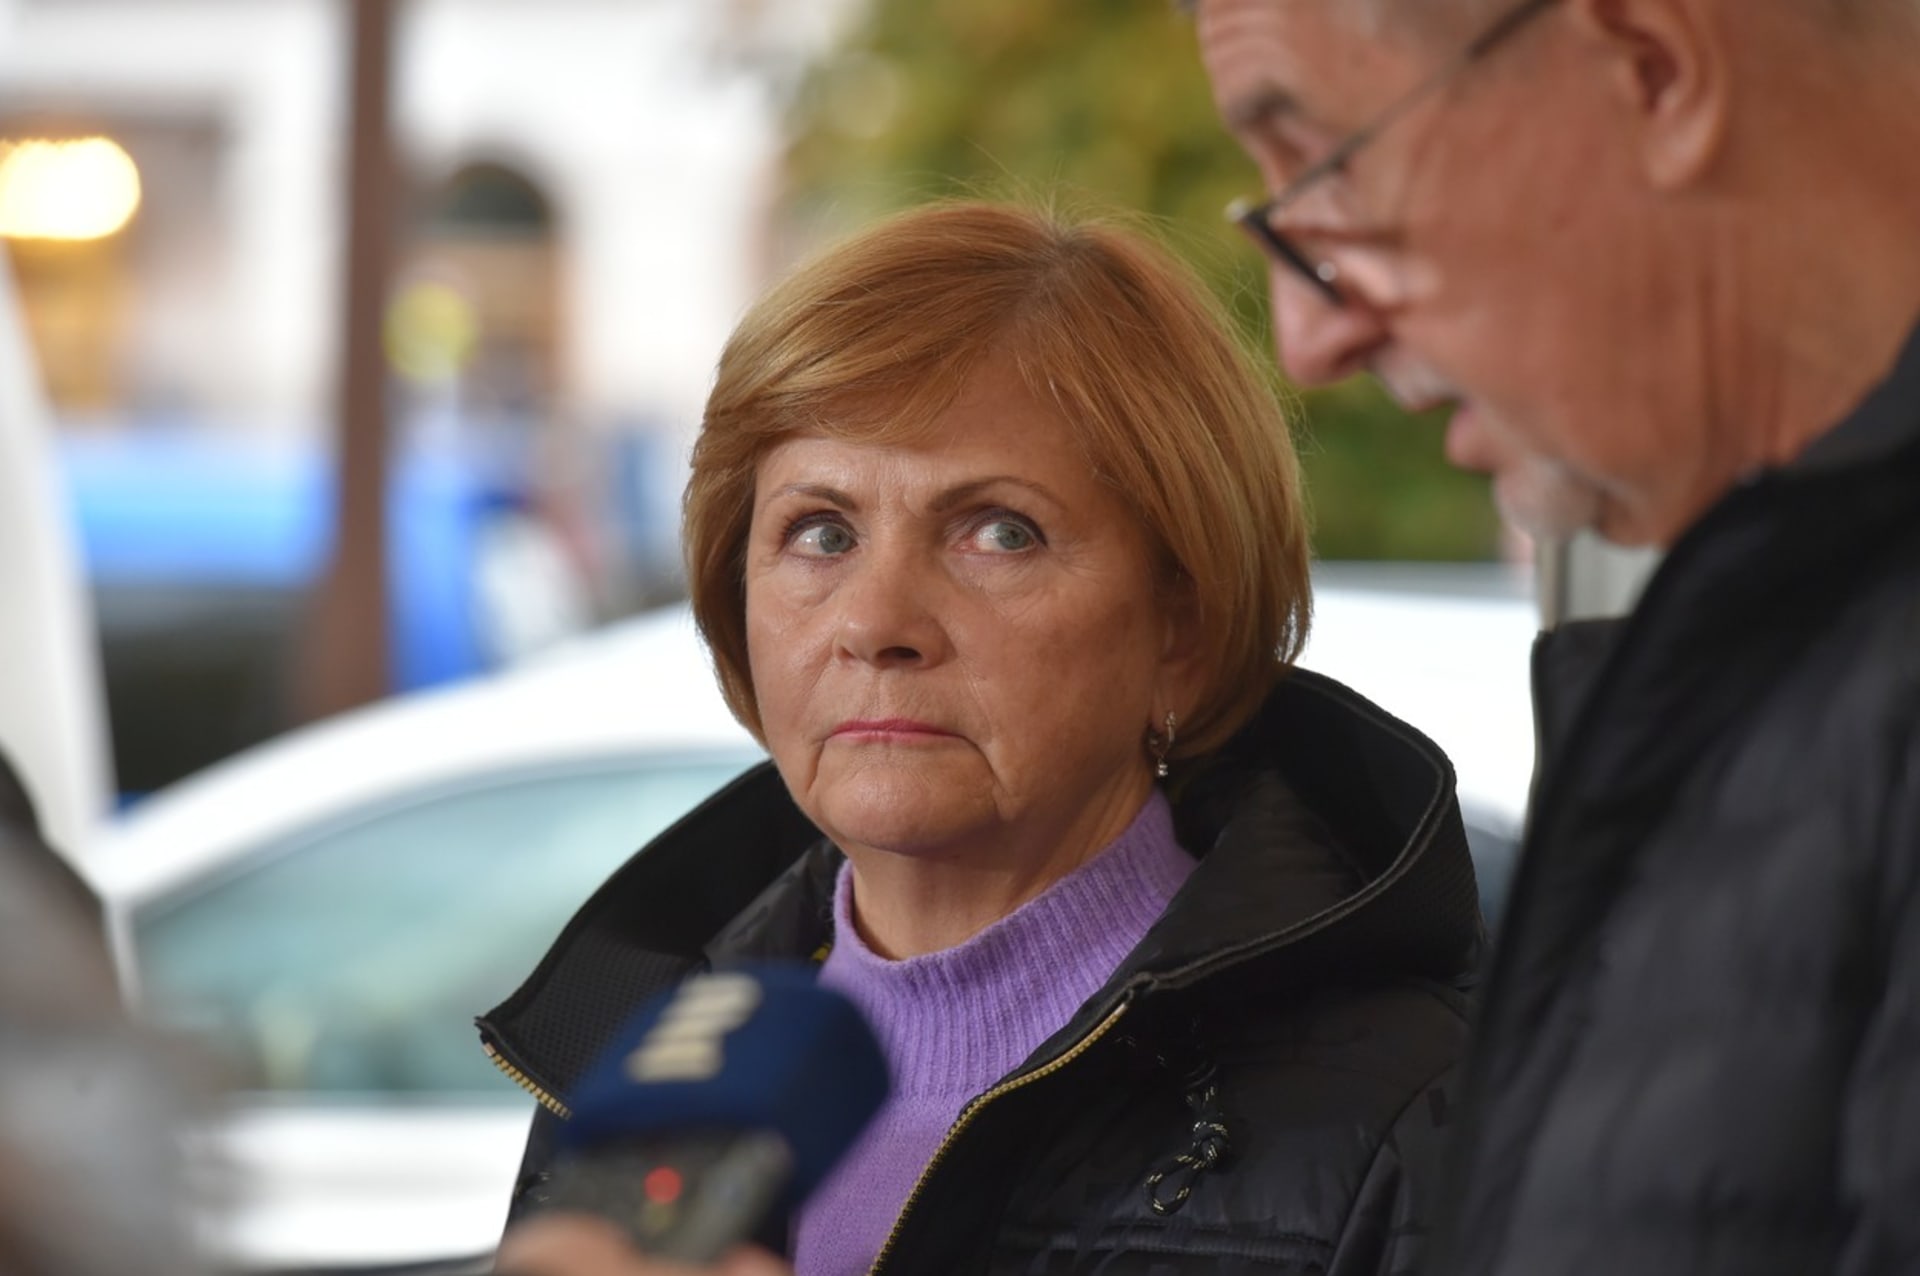 Věra Procházková (ANO) byla zvolena senátorkou v obvodu Karlovy Vary, kde získala 67,97 procent hlasů.